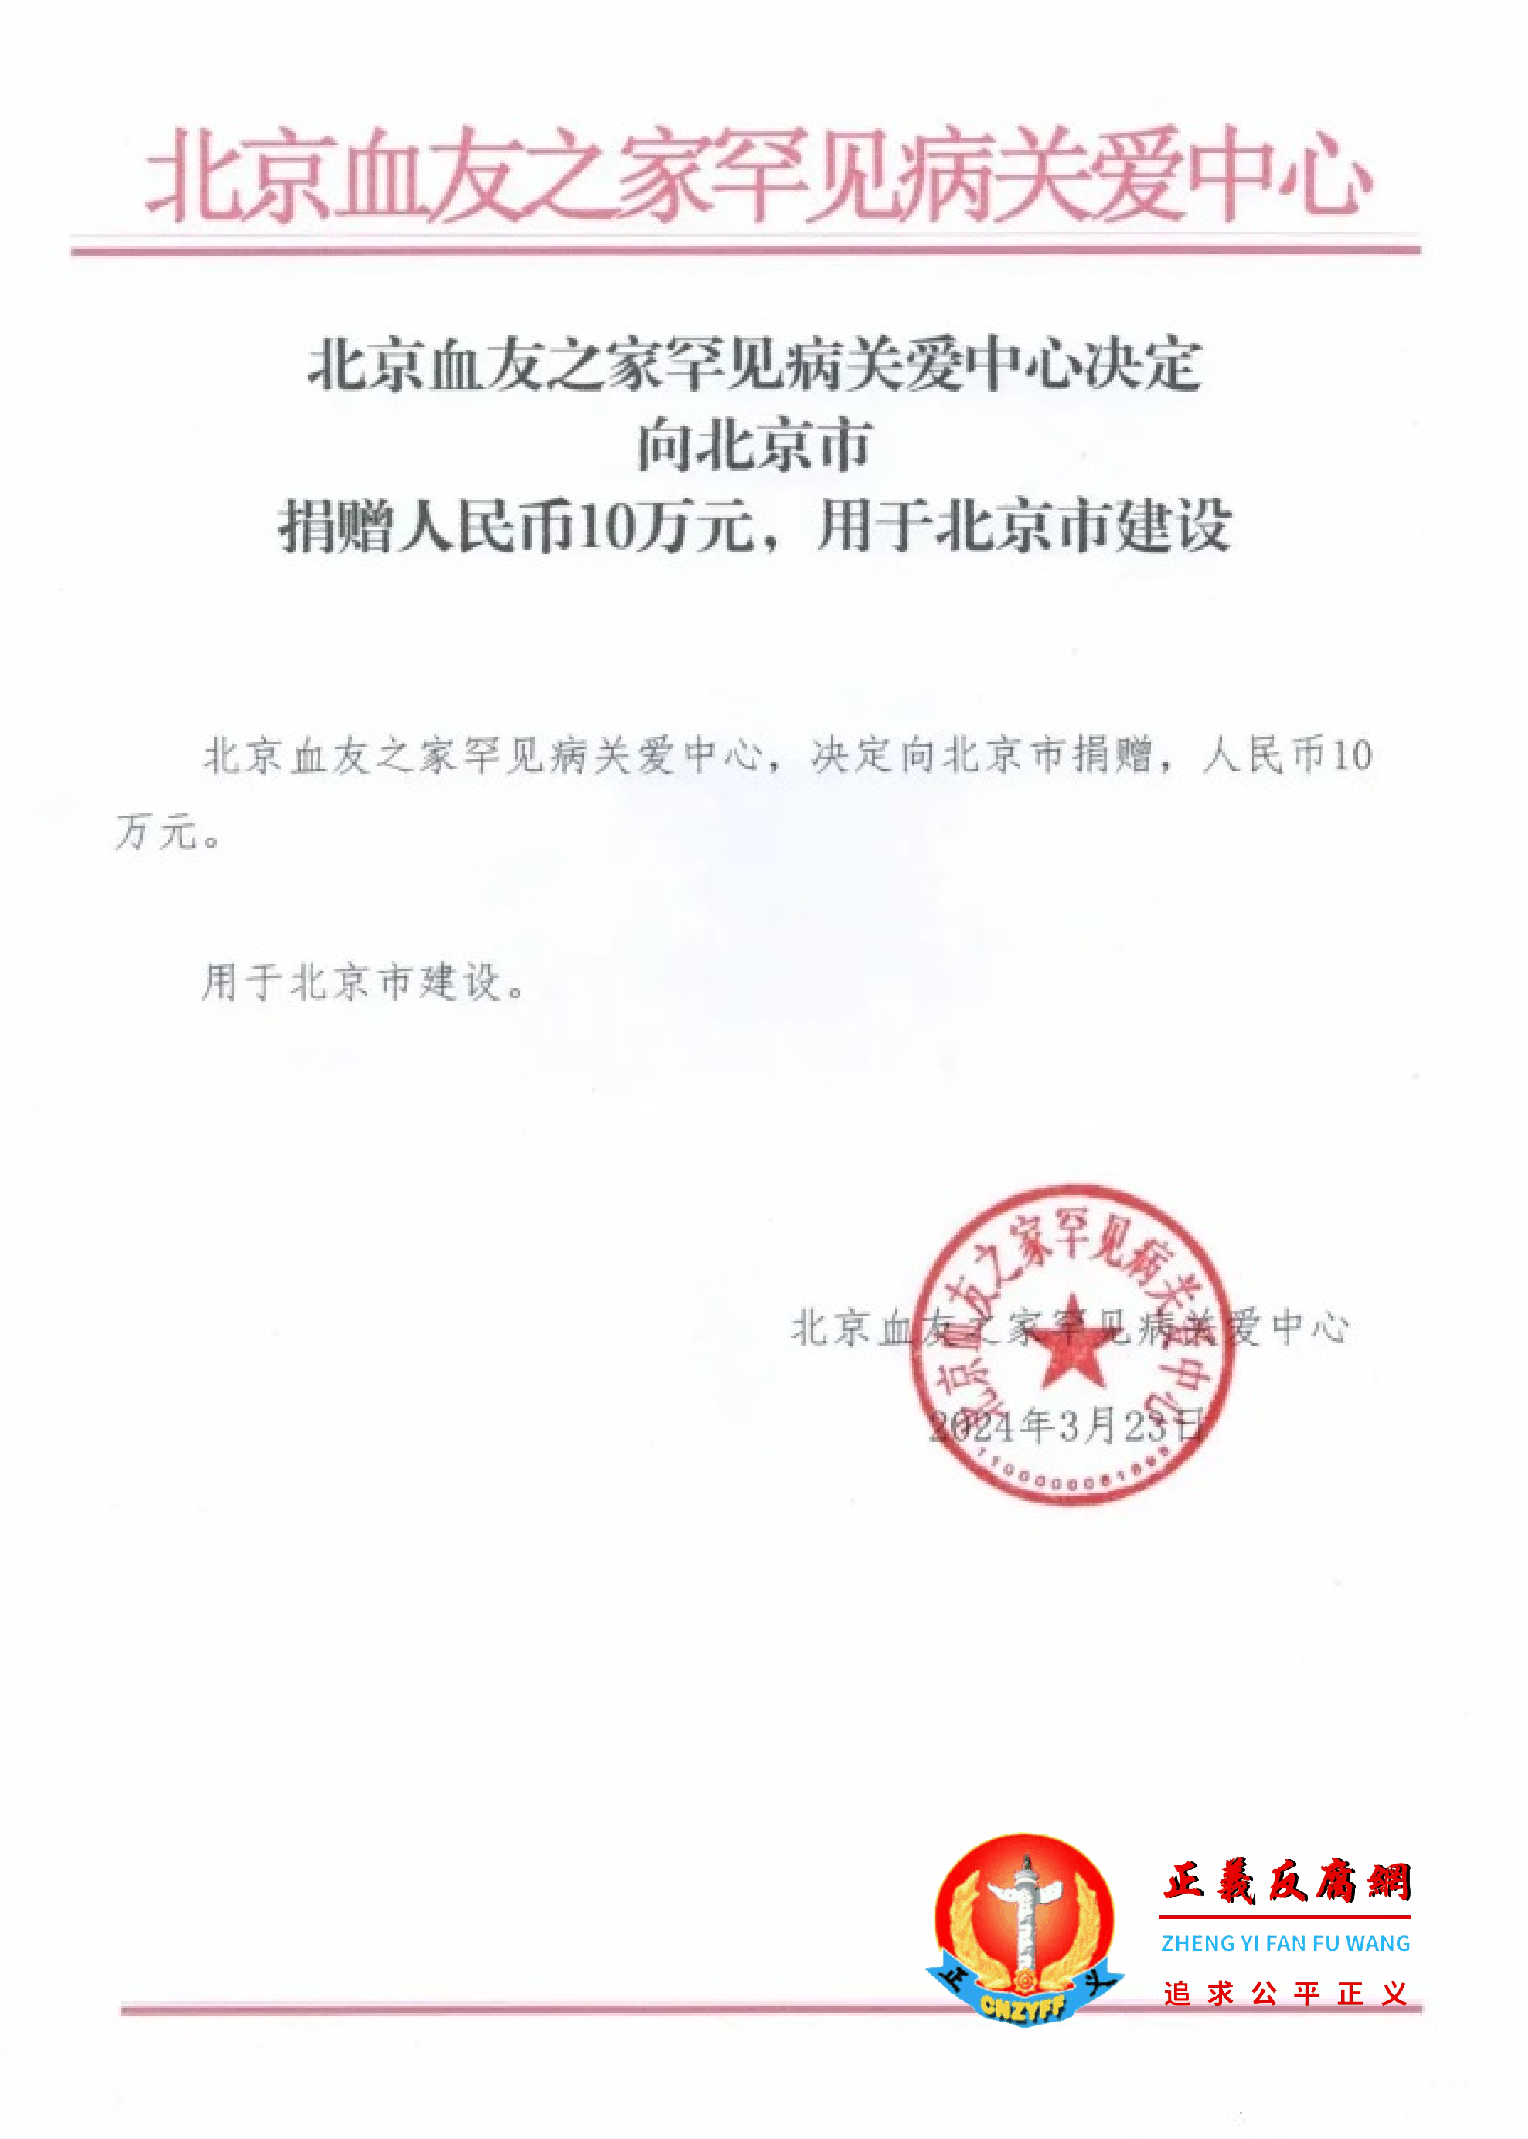 血友之家：“决定向北京市捐赠，人民币10万元。用于北京市建设。”.png